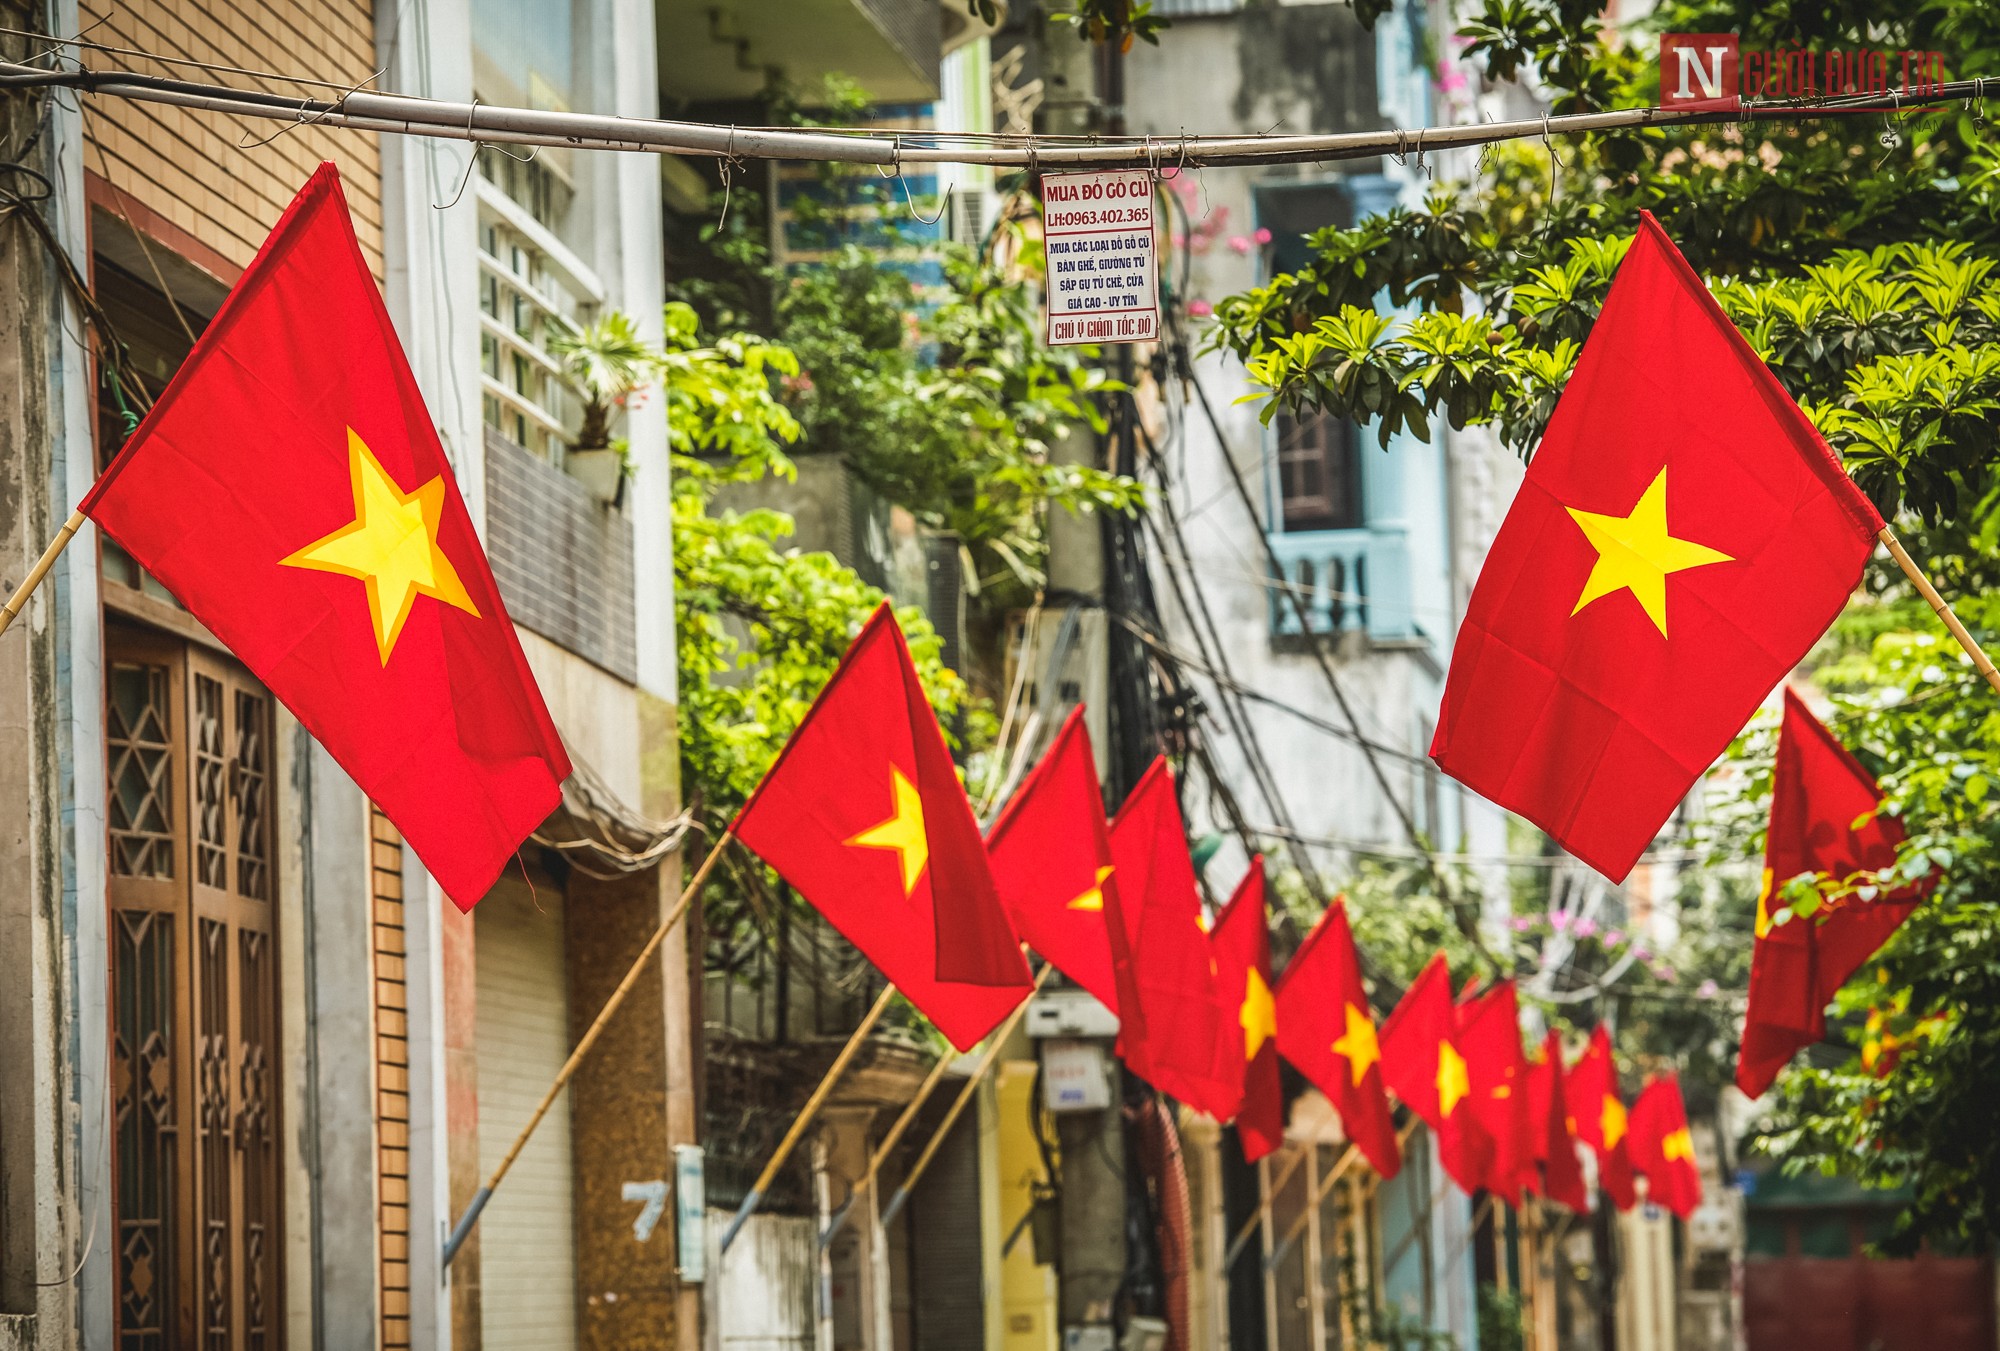 Treo cờ Tổ quốc là truyền thống lịch sử của người dân Việt Nam, với sự ý thức cao về tình yêu và sự bảo vệ đất nước. Hãy cùng ngắm nhìn chiếc cờ đỏ tung bay trên bầu trời, truyền tải thông điệp sâu sắc về tình yêu quê hương và sự đoàn kết của cả dân tộc.